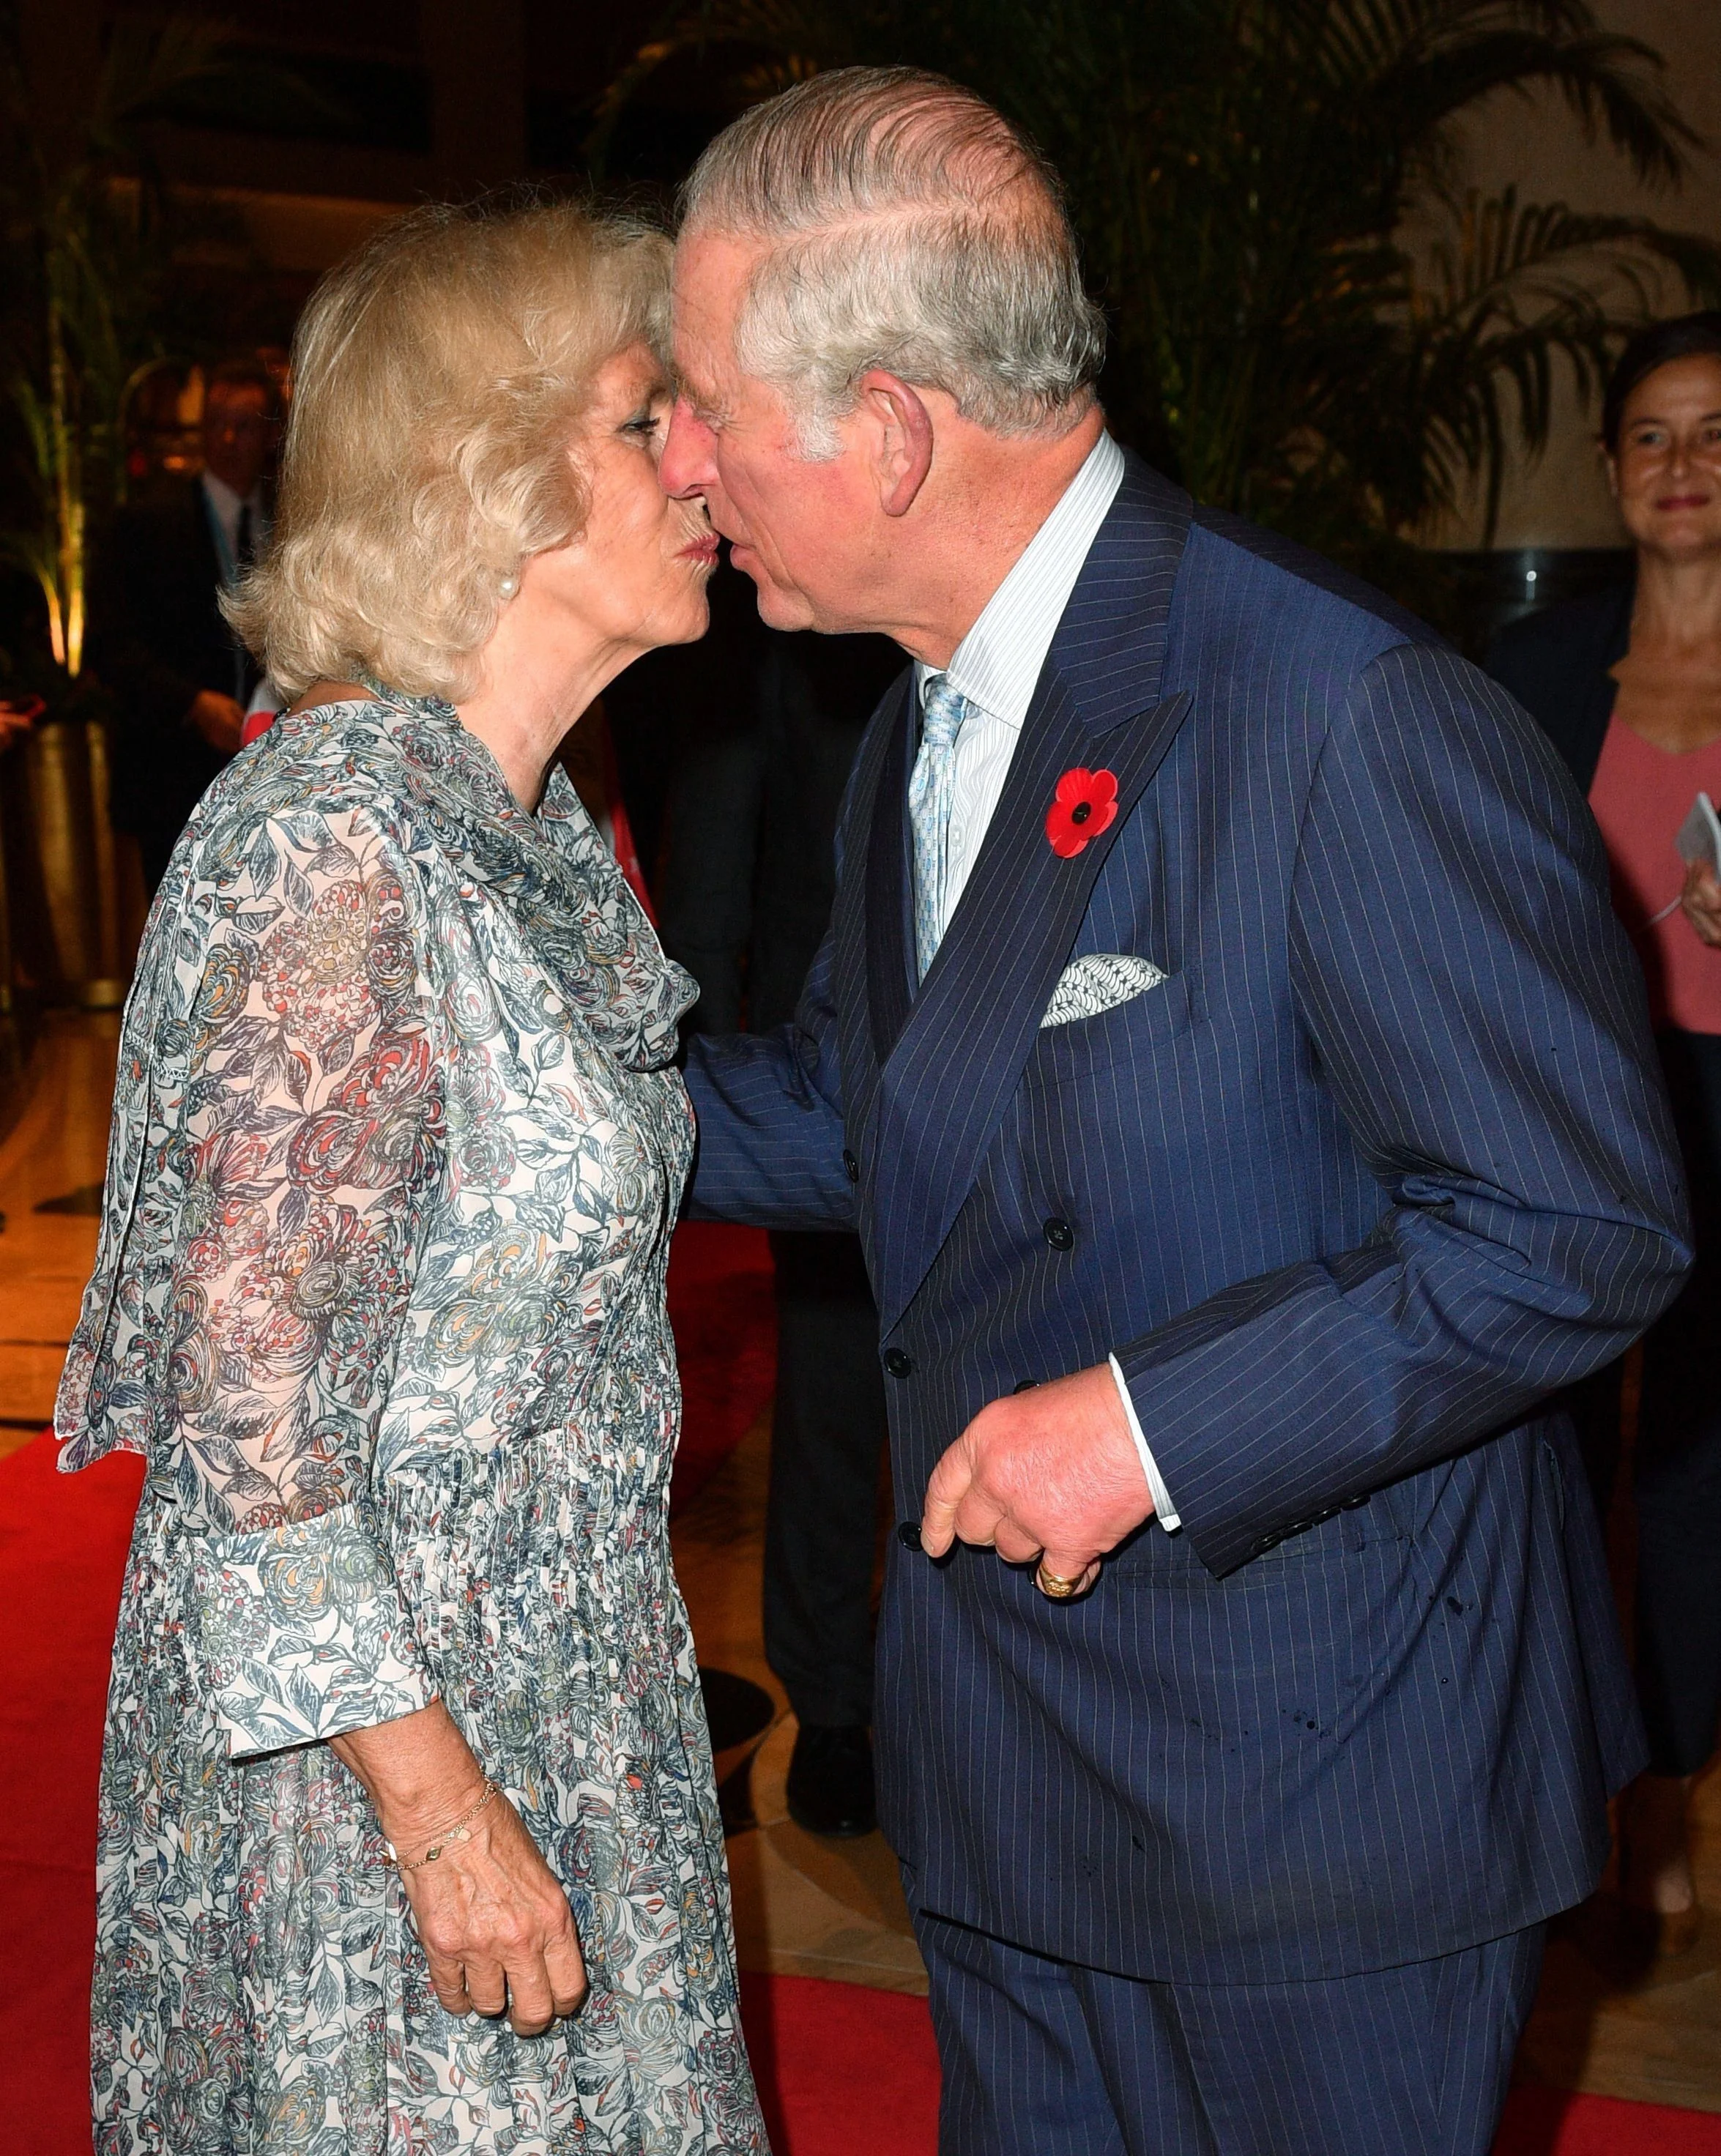 По-королівськи: принц Чарльз демонстративно поцілував герцогиню Каміллу - фото 348405